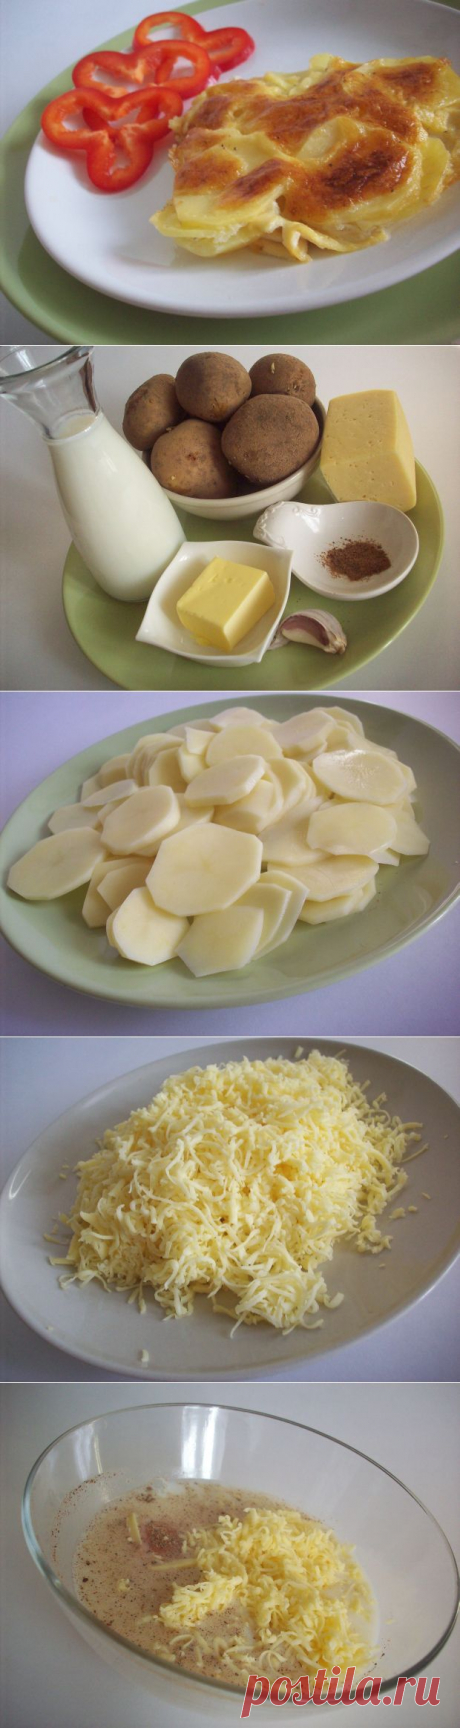 Запеченный под сыром картофель «Дофине» | Ваши любимые рецепты